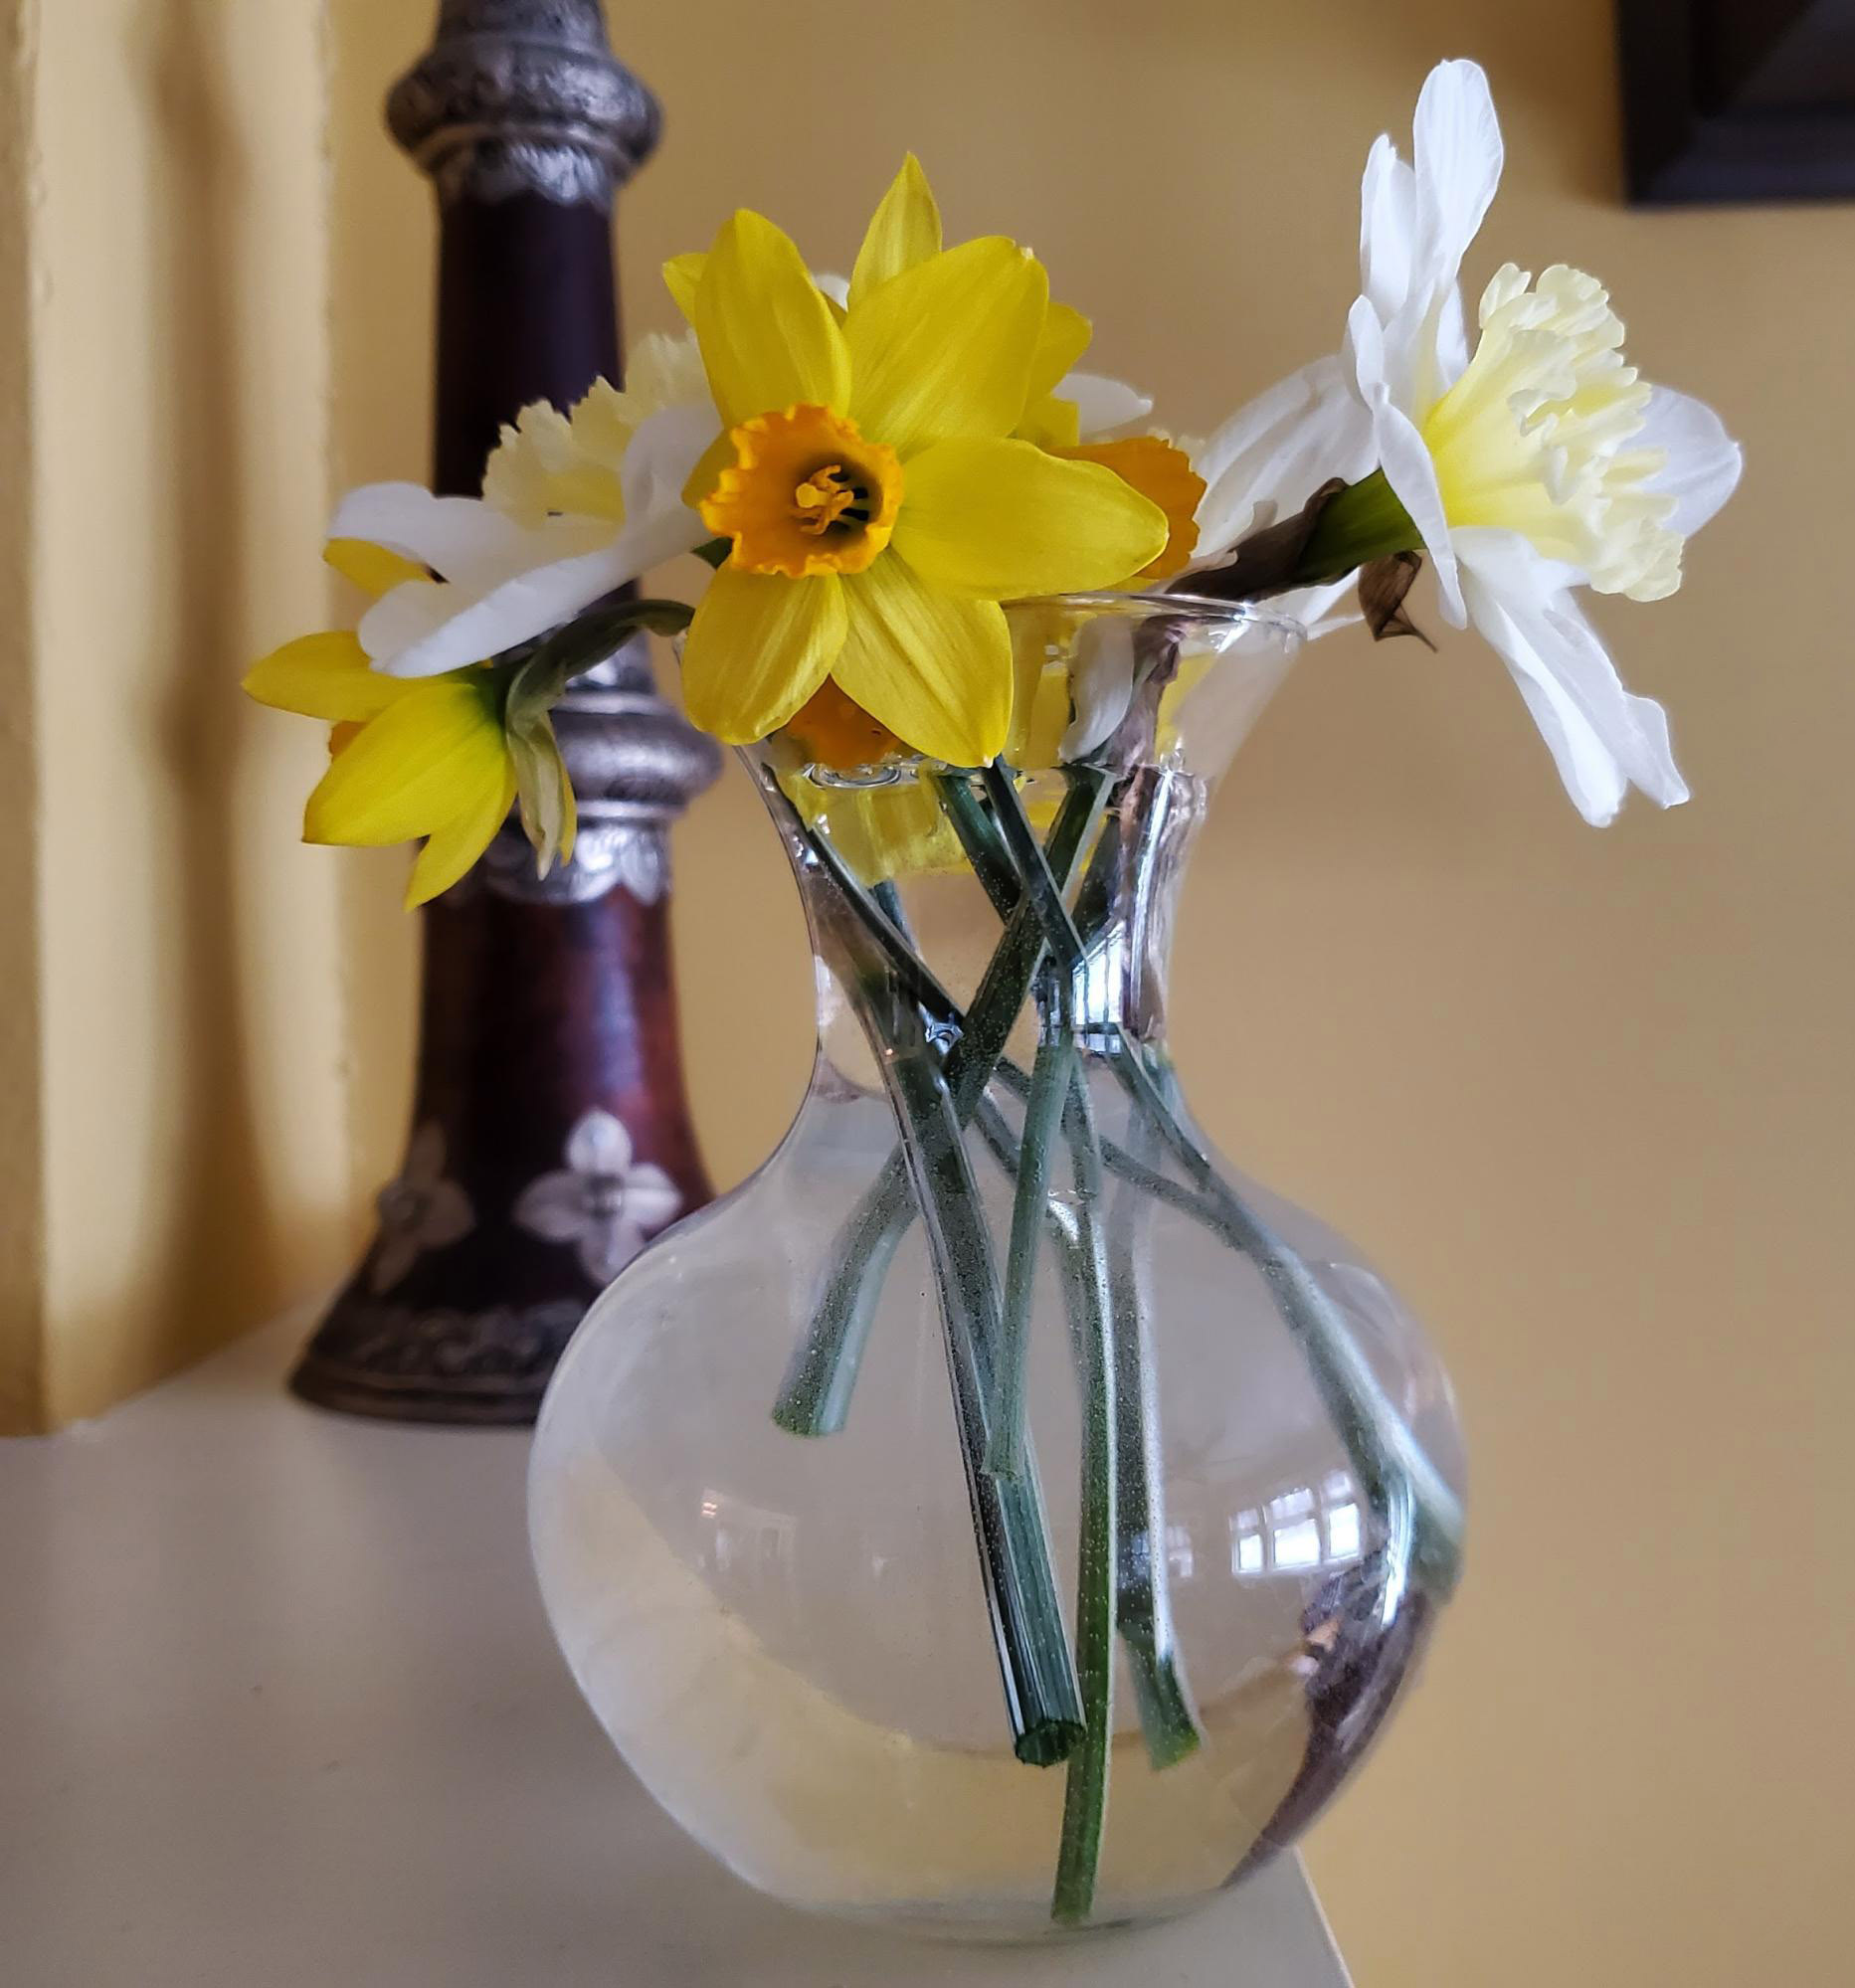 Daffodills in a vase